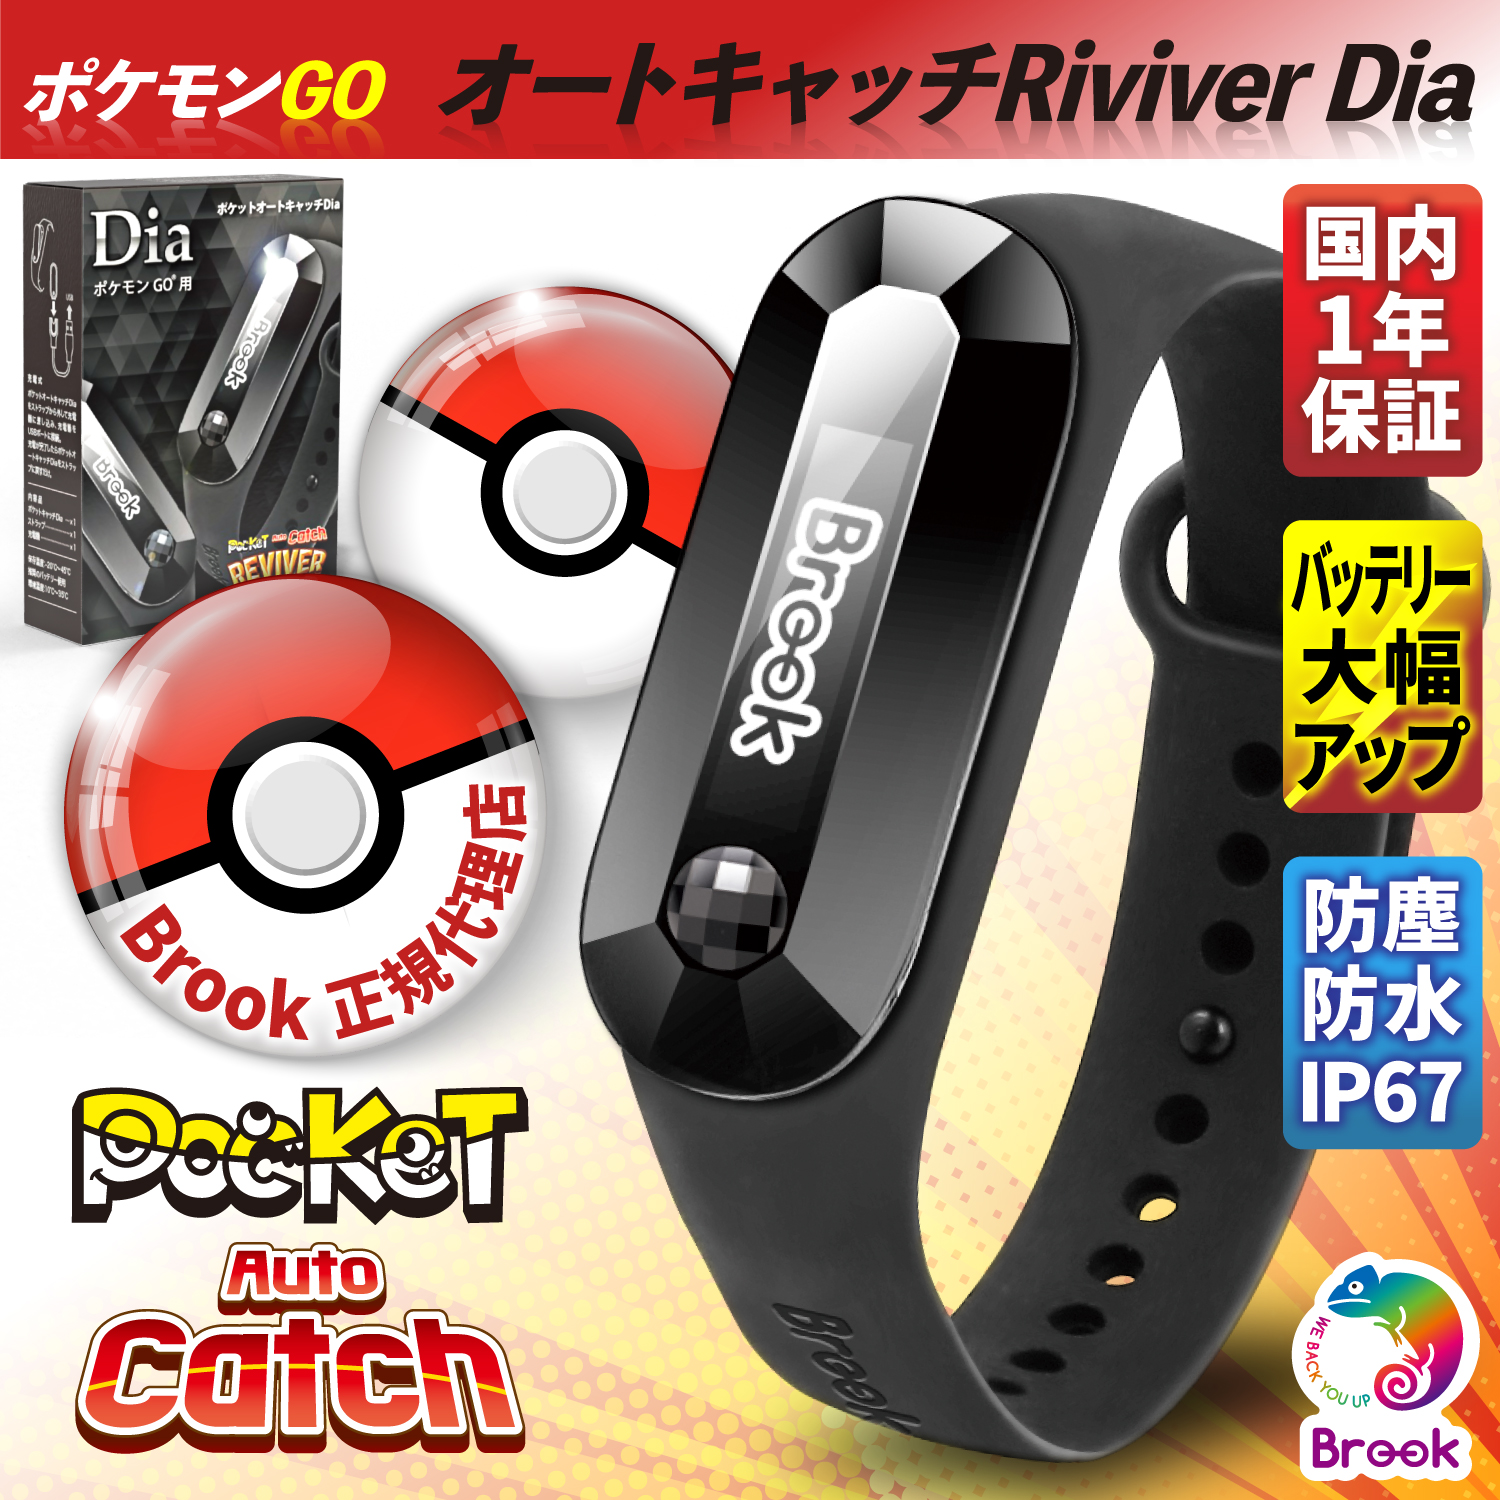 最新な ポケモンgo オートキャッチdia Pocket Auto Catch 2個 スマホアクセサリー